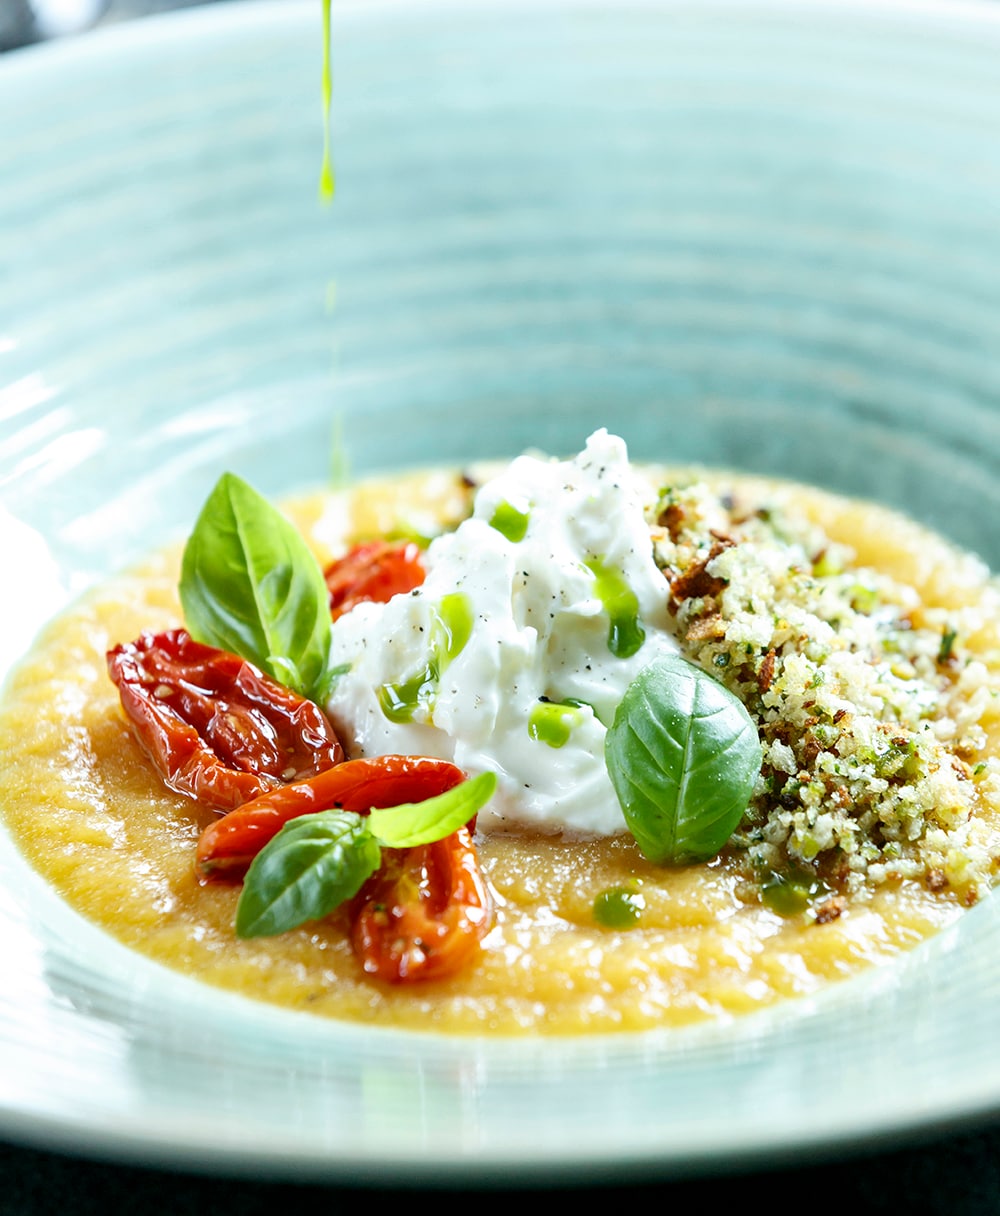 イエロートマトの冷たいスープに自家製ストラッチャテッラチーズをのせた“クルダイオーラ” 16ユーロ。